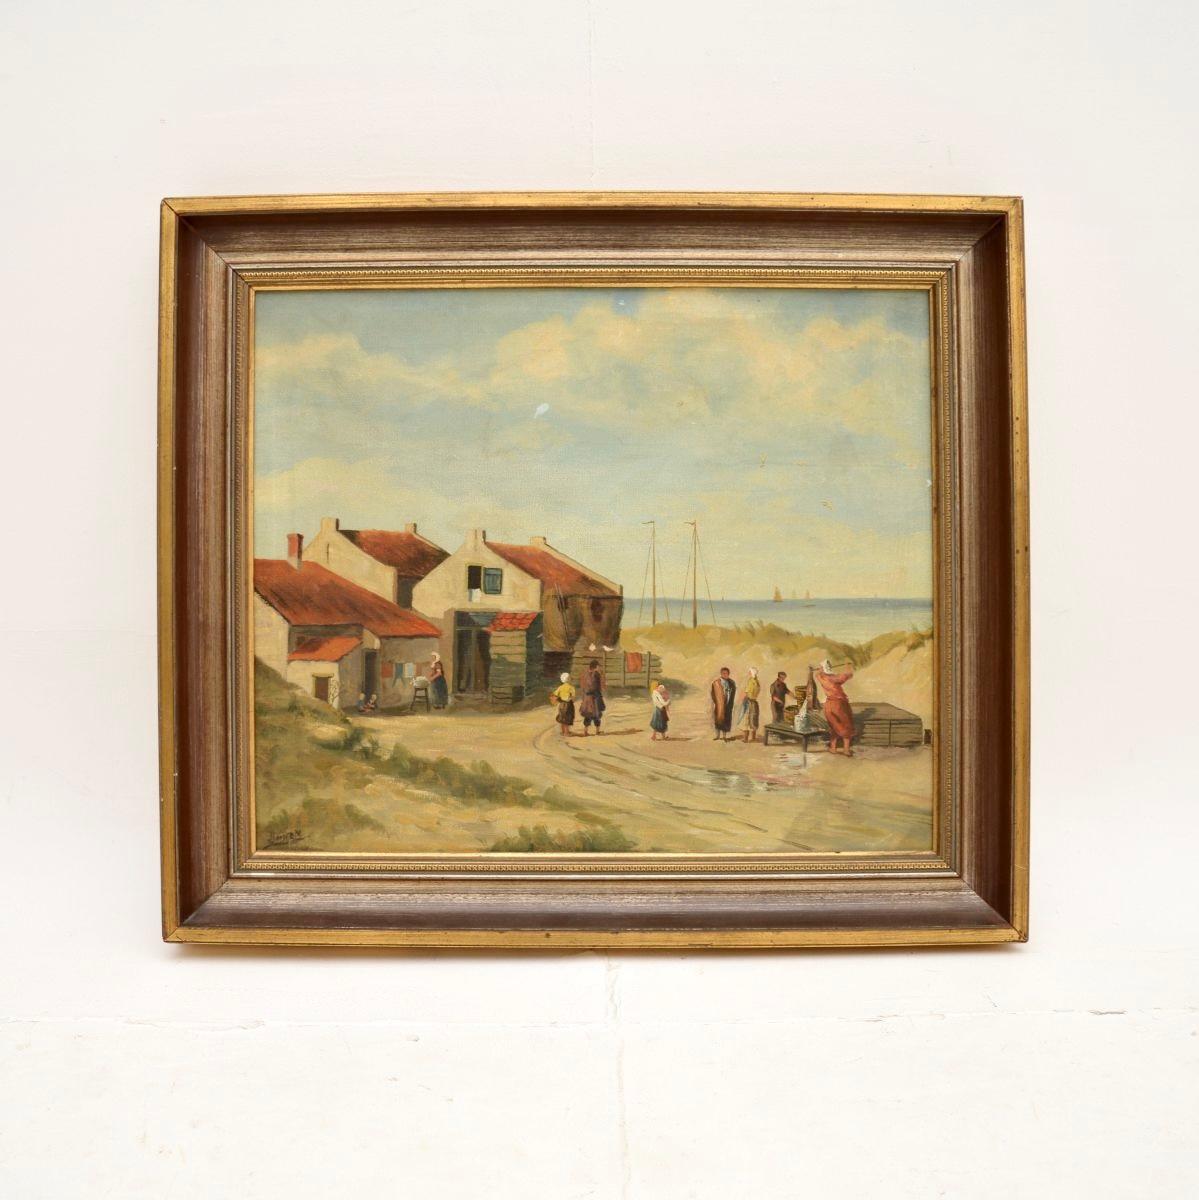 Une belle peinture à l'huile de paysage ancienne encadrée. Il s'agit vraisemblablement d'un document anglais datant des années 1930.

Il est merveilleusement exécuté et présente un beau sujet, représentant une scène de village au bord de la mer. La